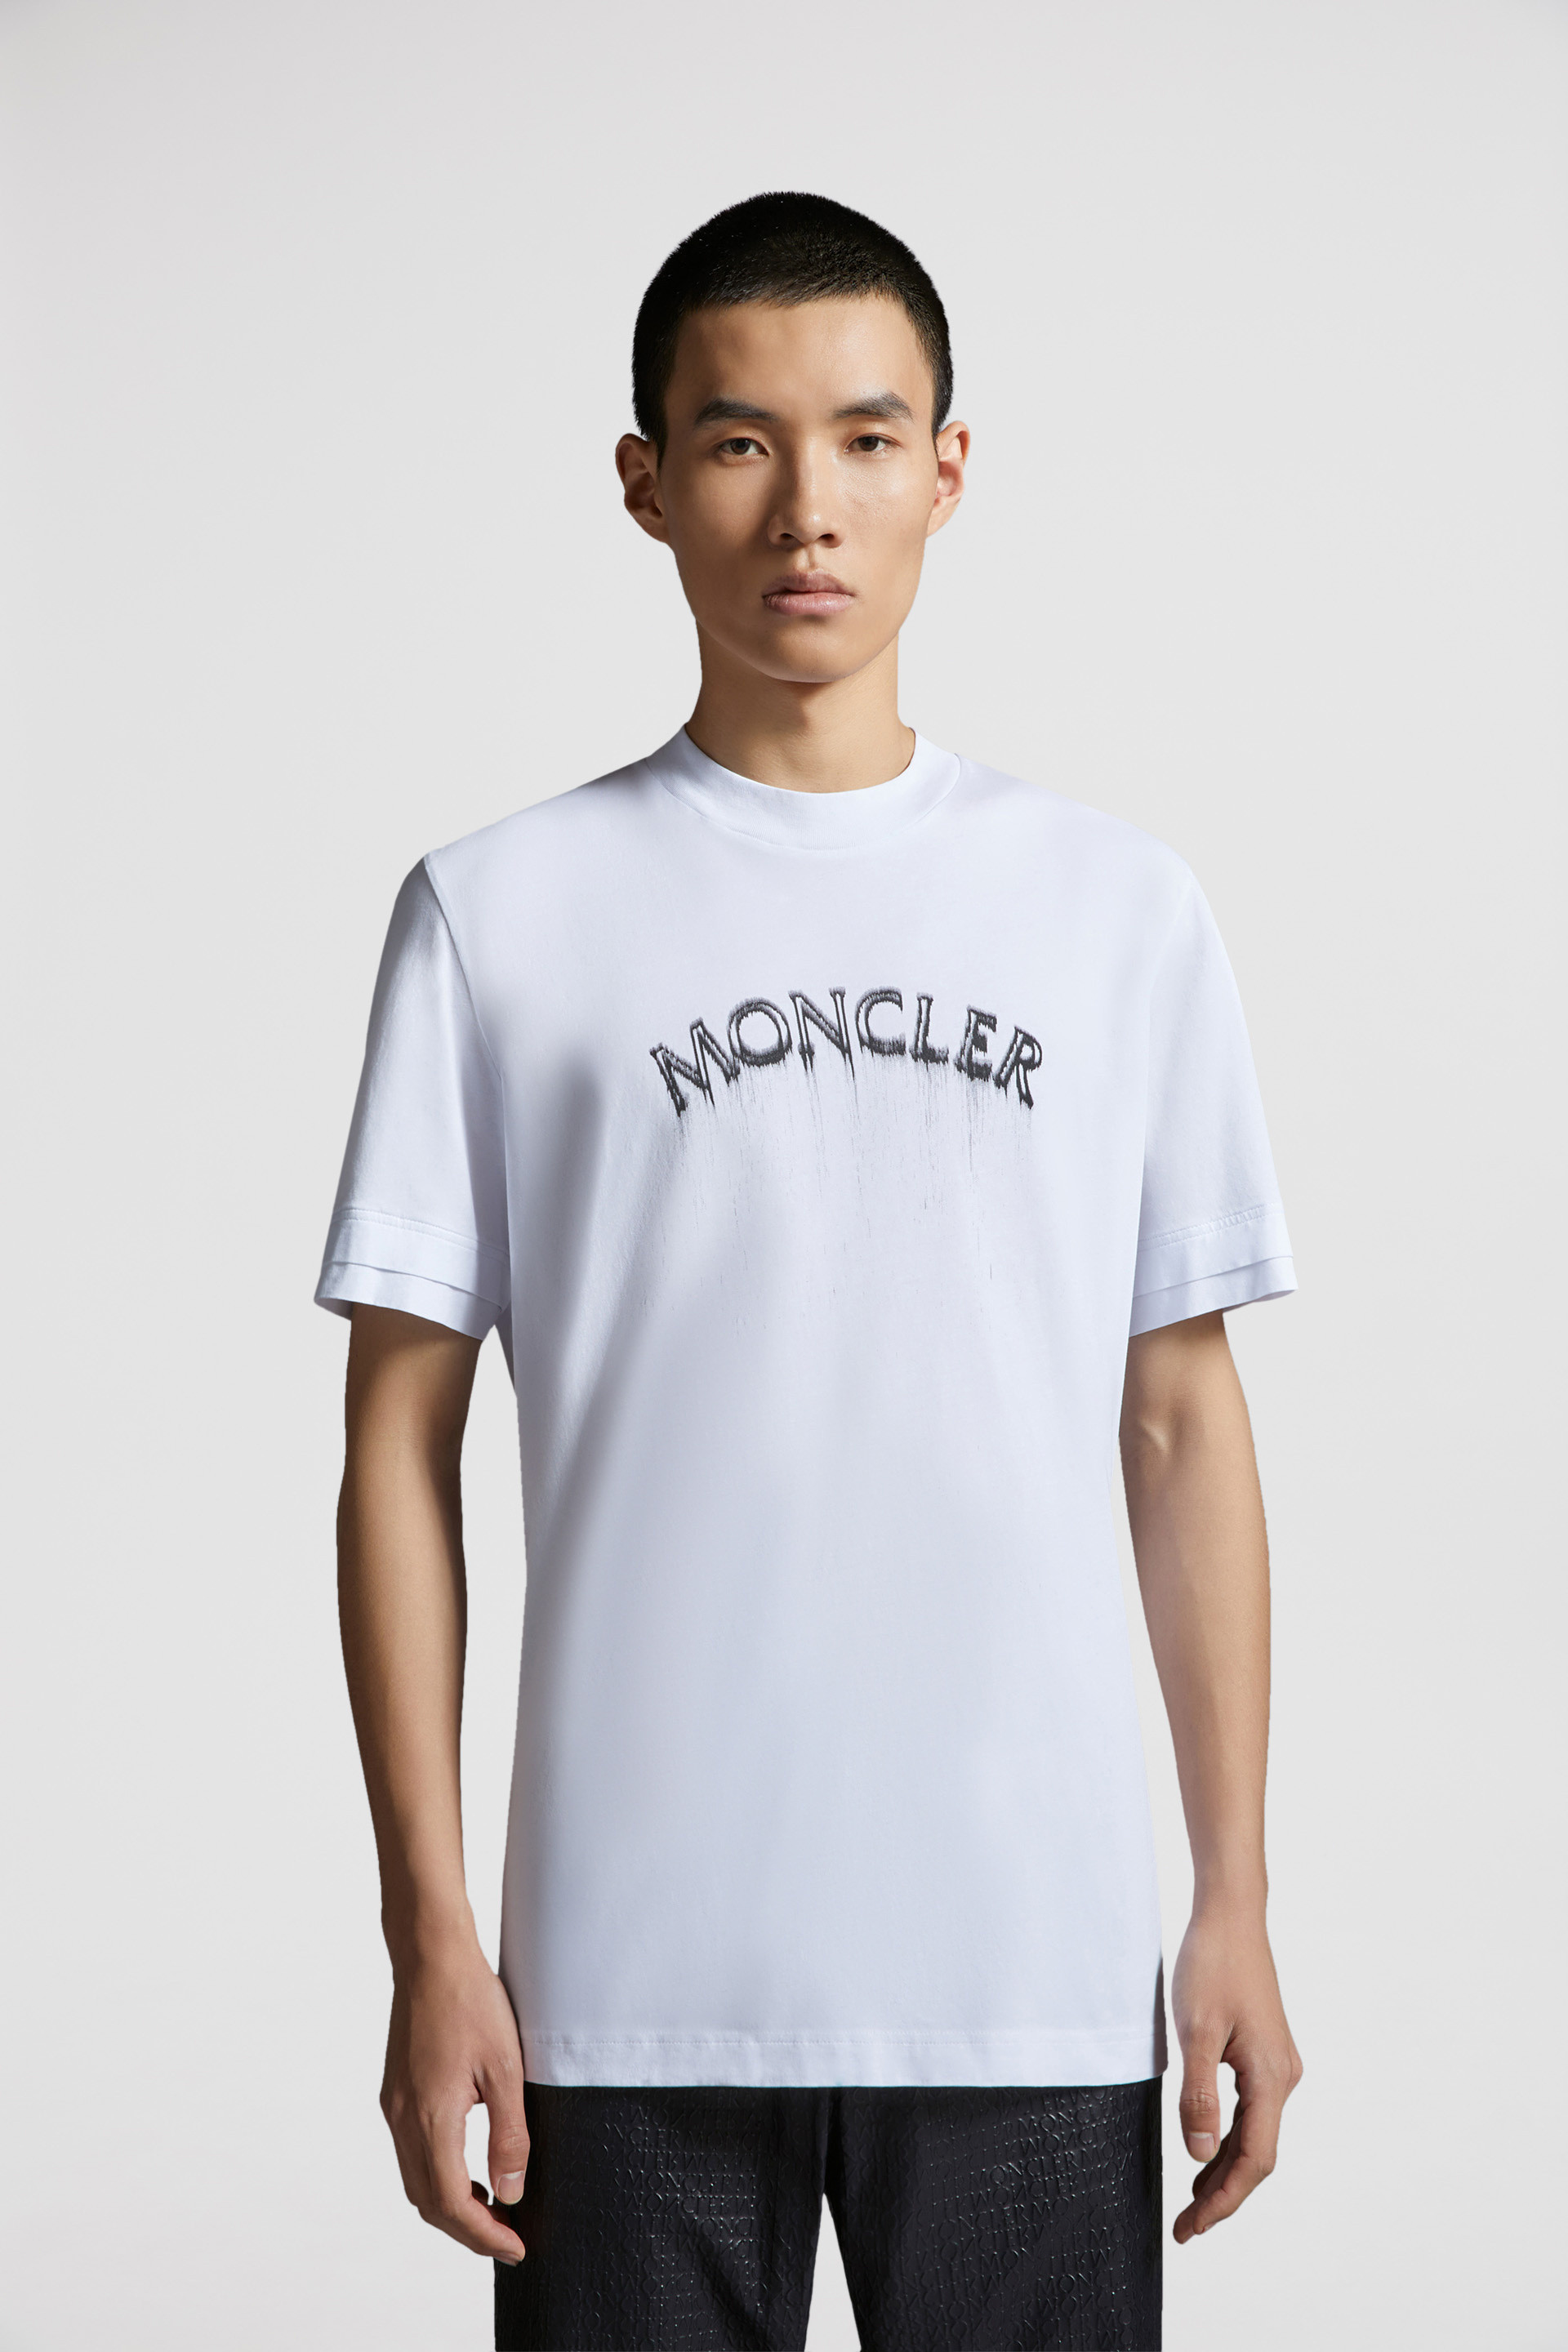 Tシャツ/カットソー(半袖/袖なし)MONCLER  Men's Tシャツ